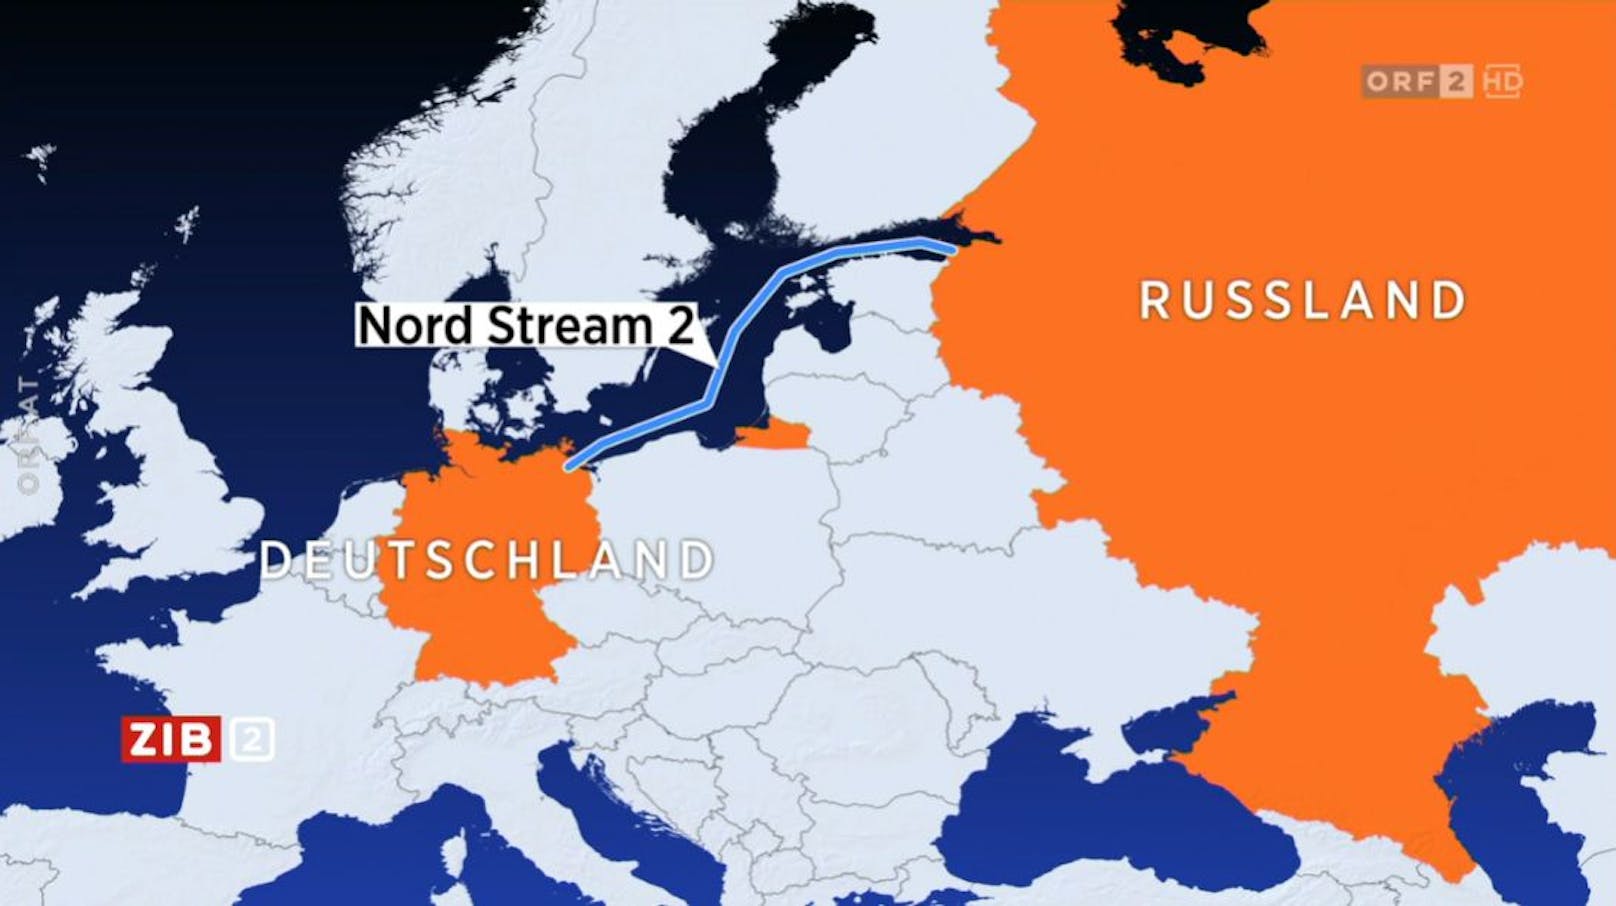 Der Verlauf von Nord Stream 2 wie während des ORF-Beitrags eingeblendet.